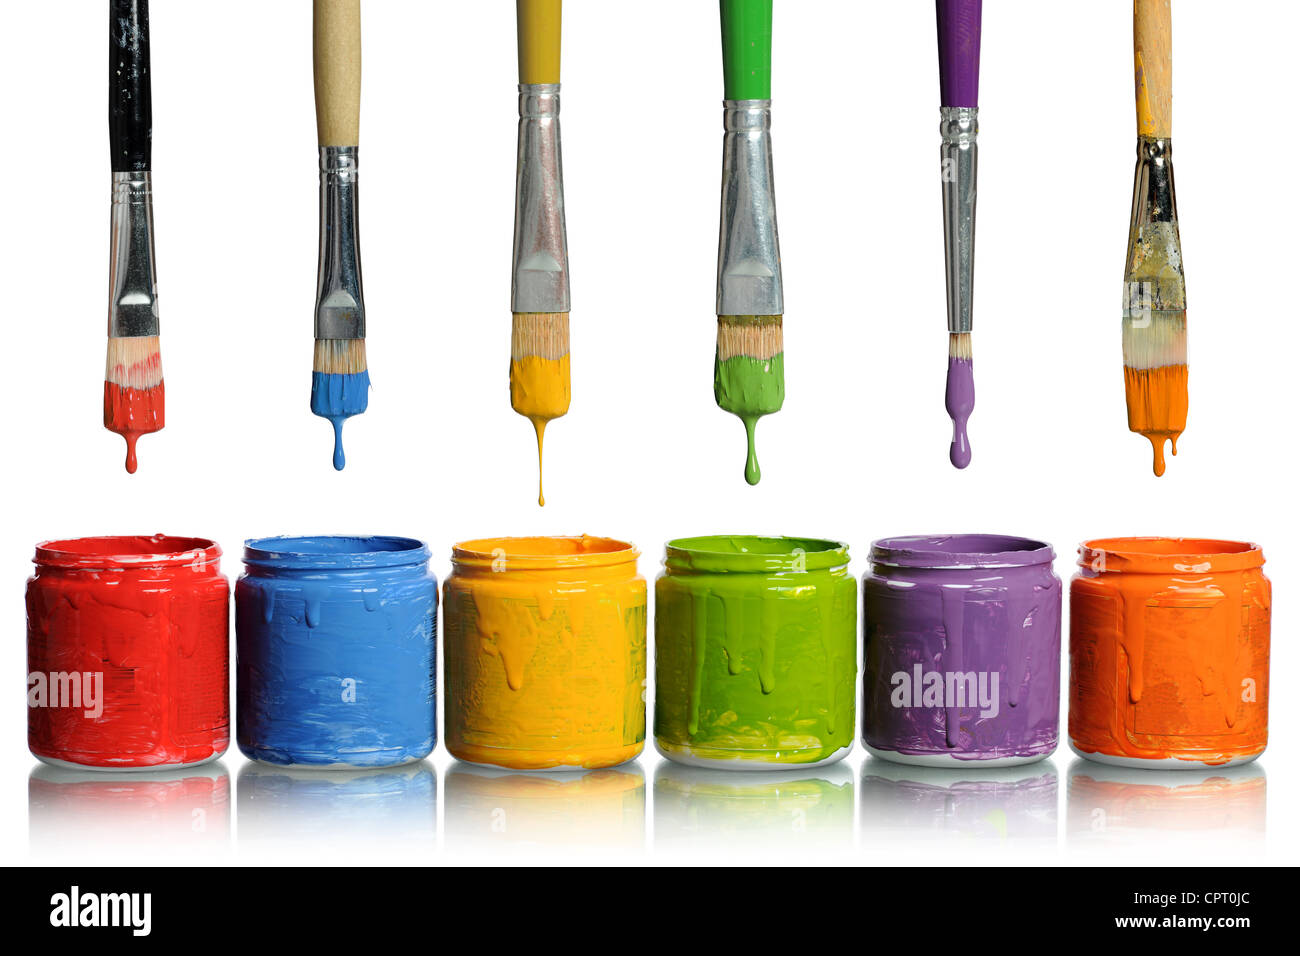 Des gouttes de peinture pinceaux de différentes couleurs dans des conteneurs Banque D'Images